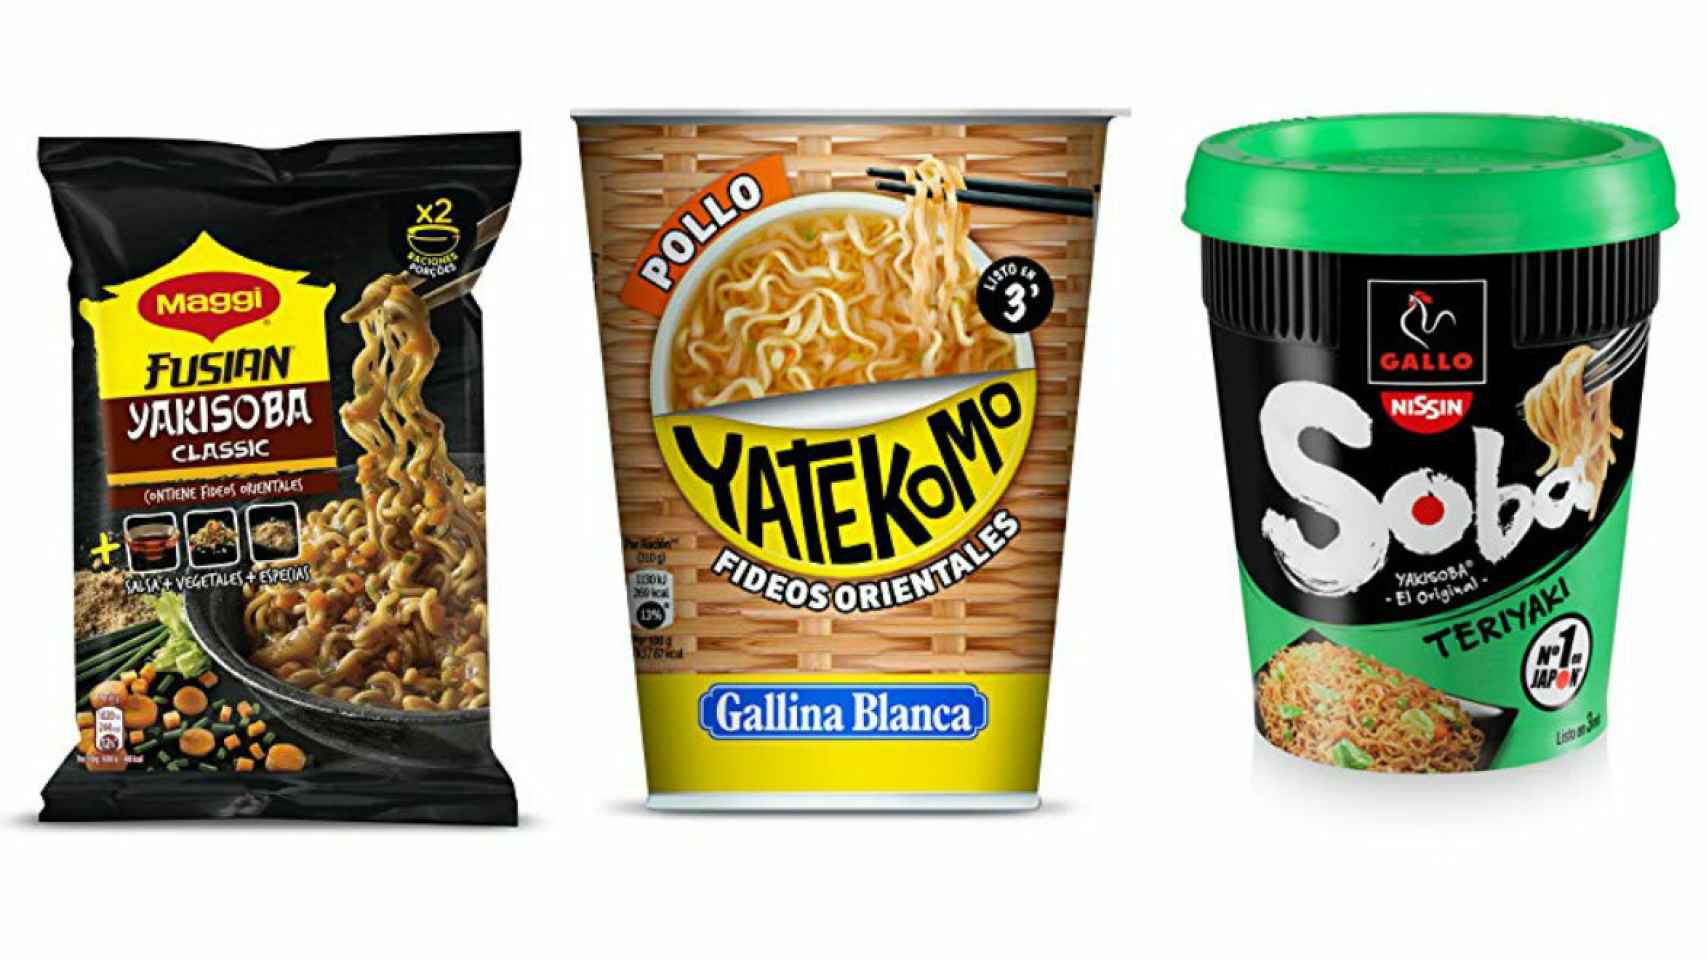 Yatekomo es la marca que abarca una mayor cuota de mercado en la actualidad.